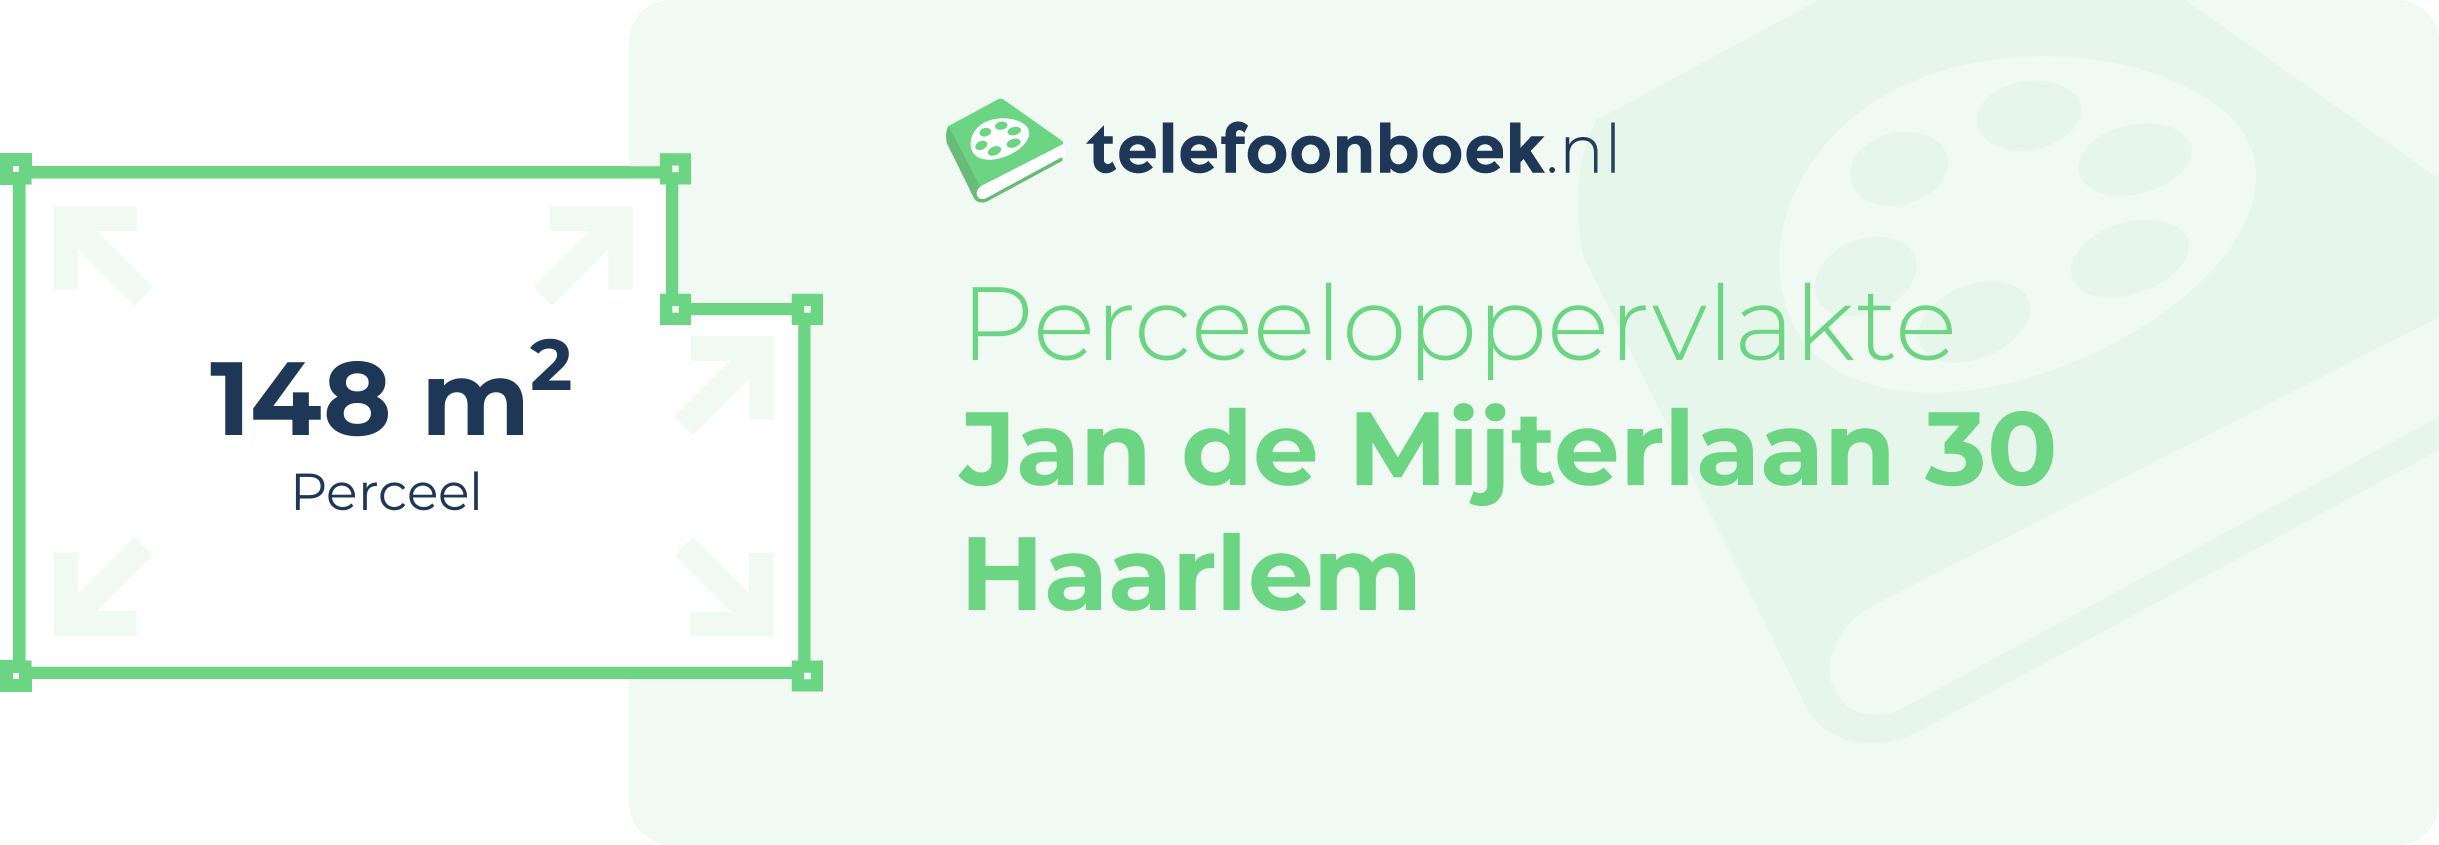 Perceeloppervlakte Jan De Mijterlaan 30 Haarlem